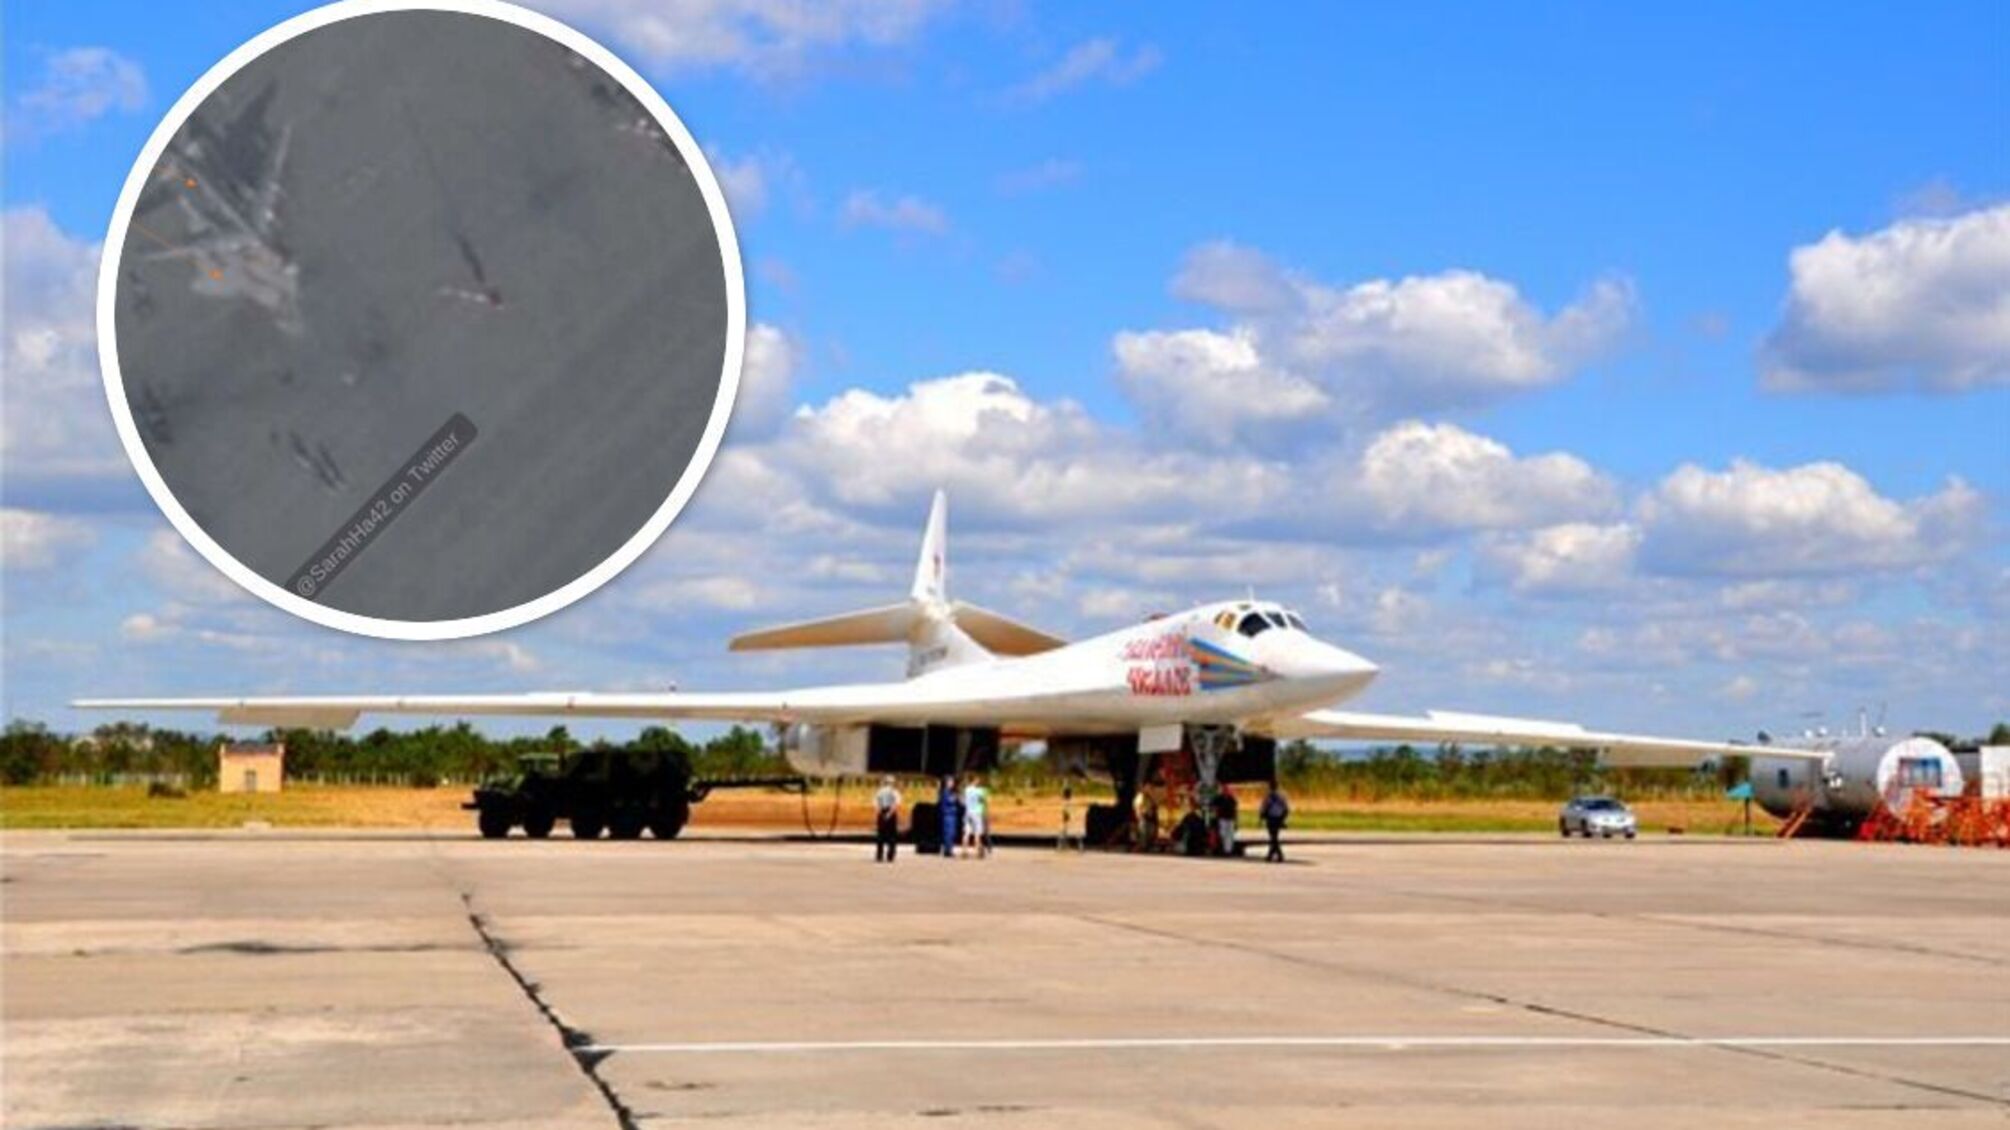 Рф прячет ракетоносцы от украинских дронов: о чем свидетельствует передислокация вражеской авиации